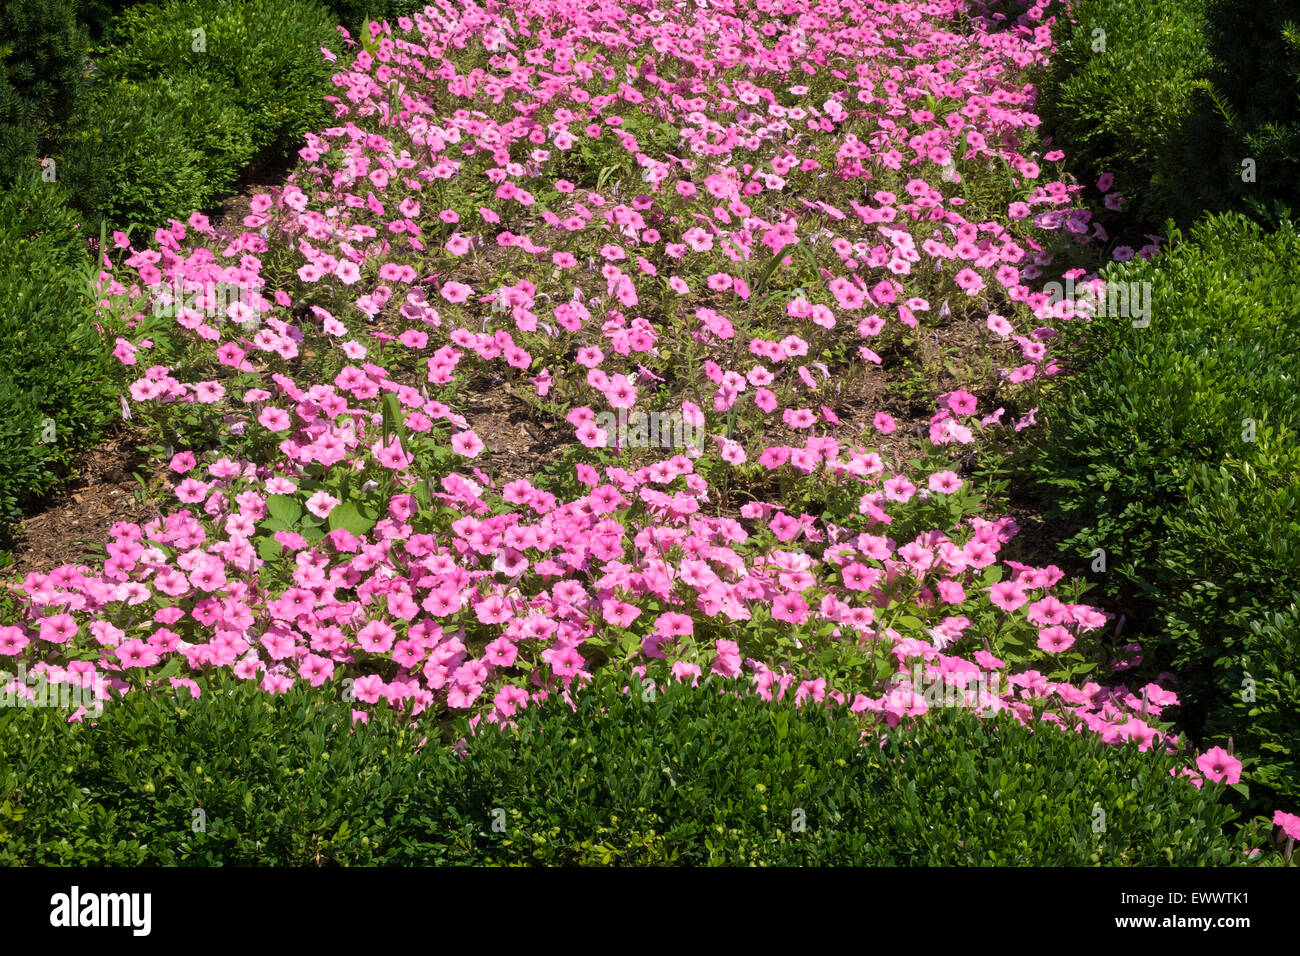 Pink petunias in a city garden Stock Photo